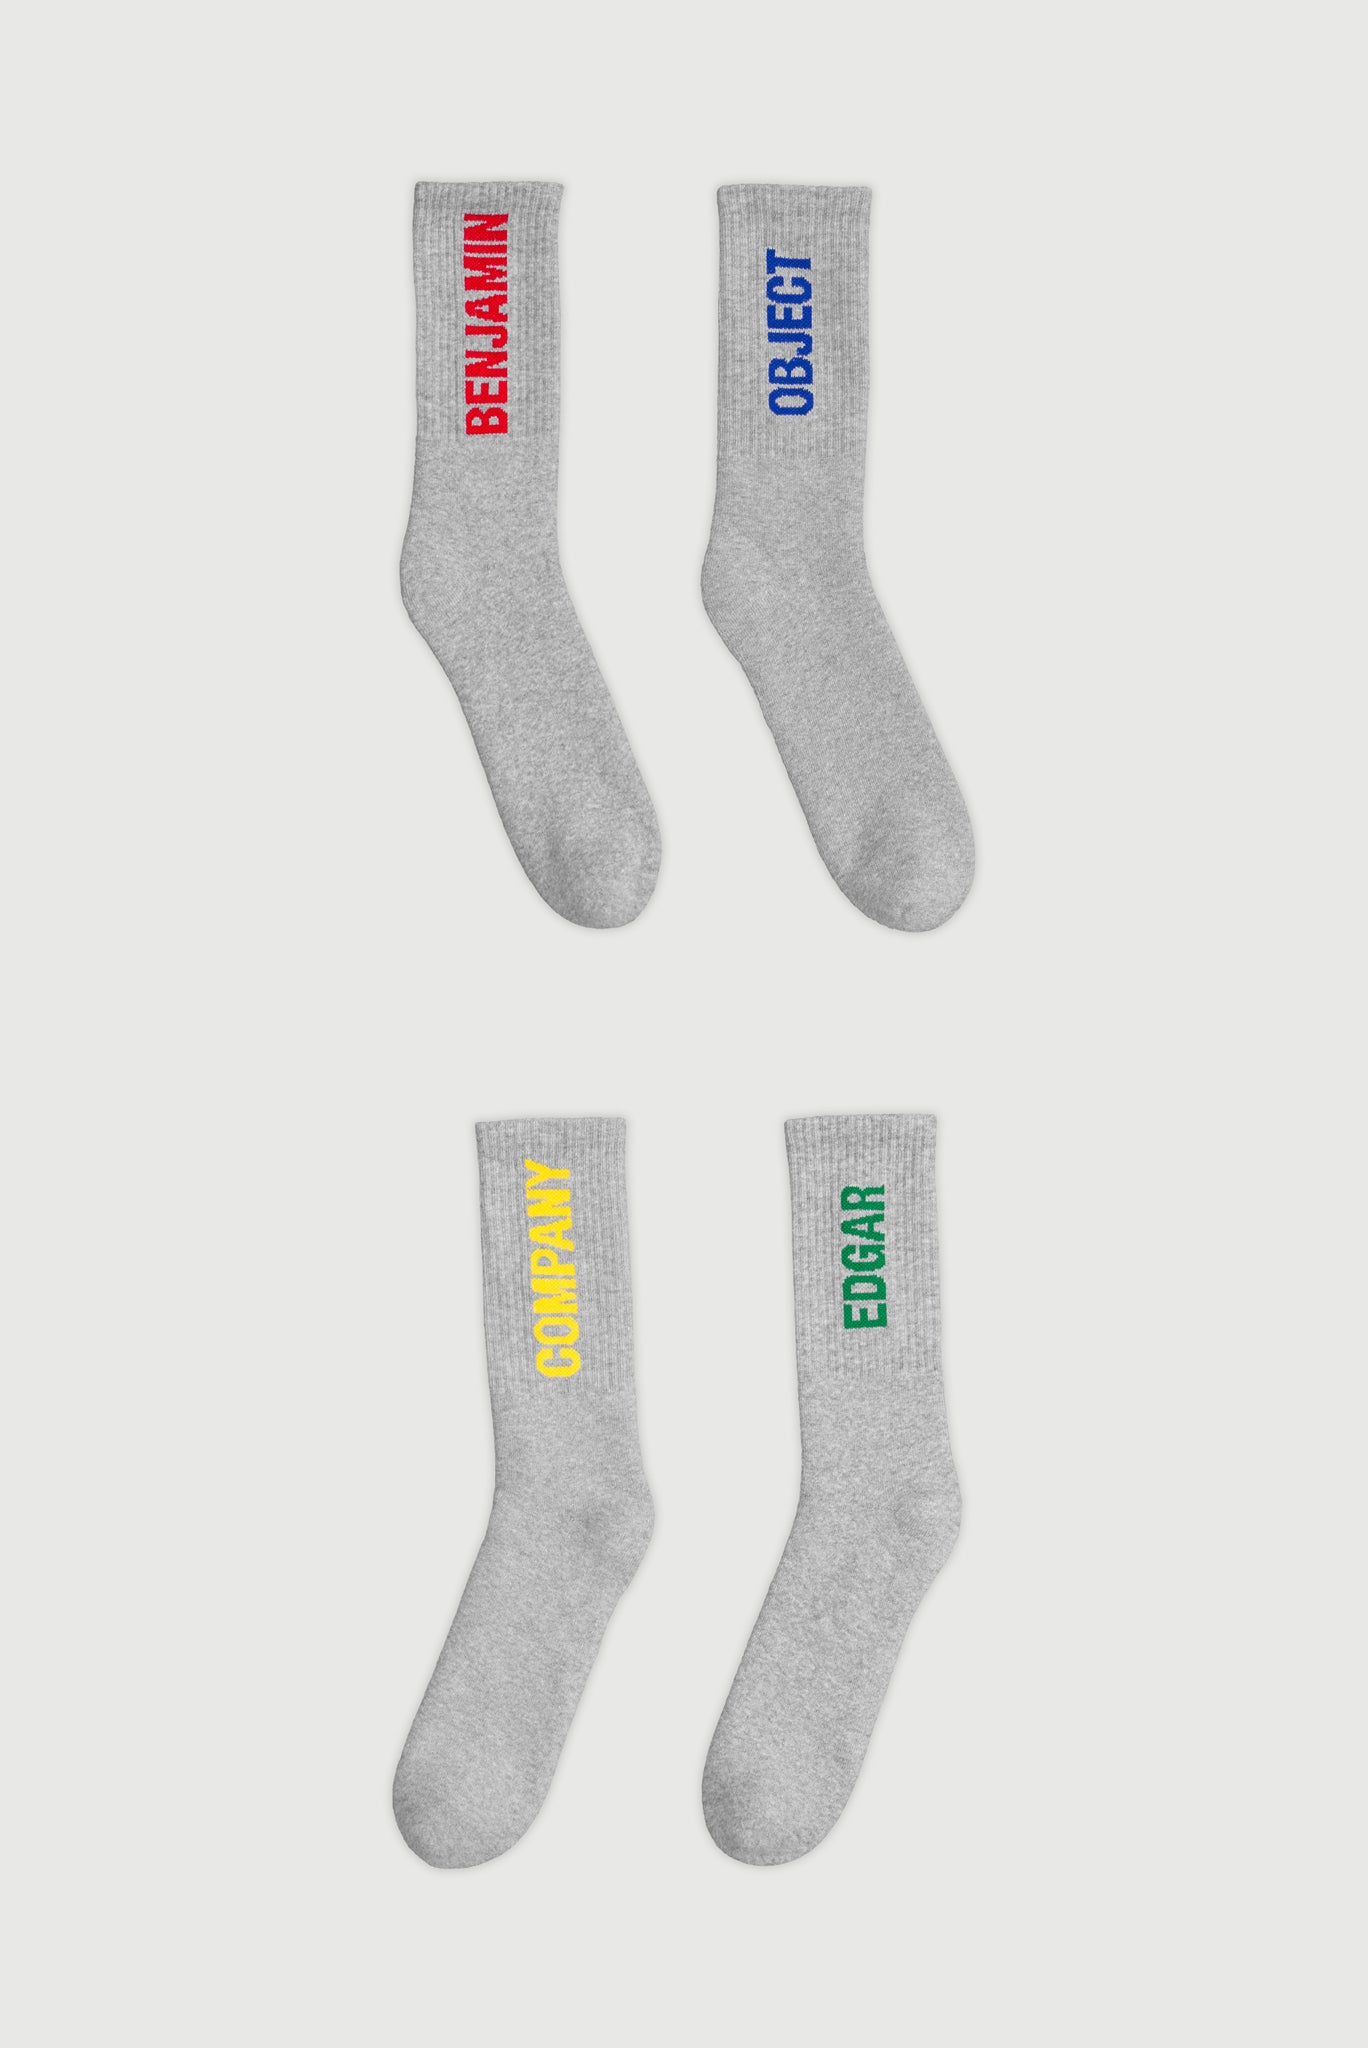 Studio Sliding Socks - Two Pack